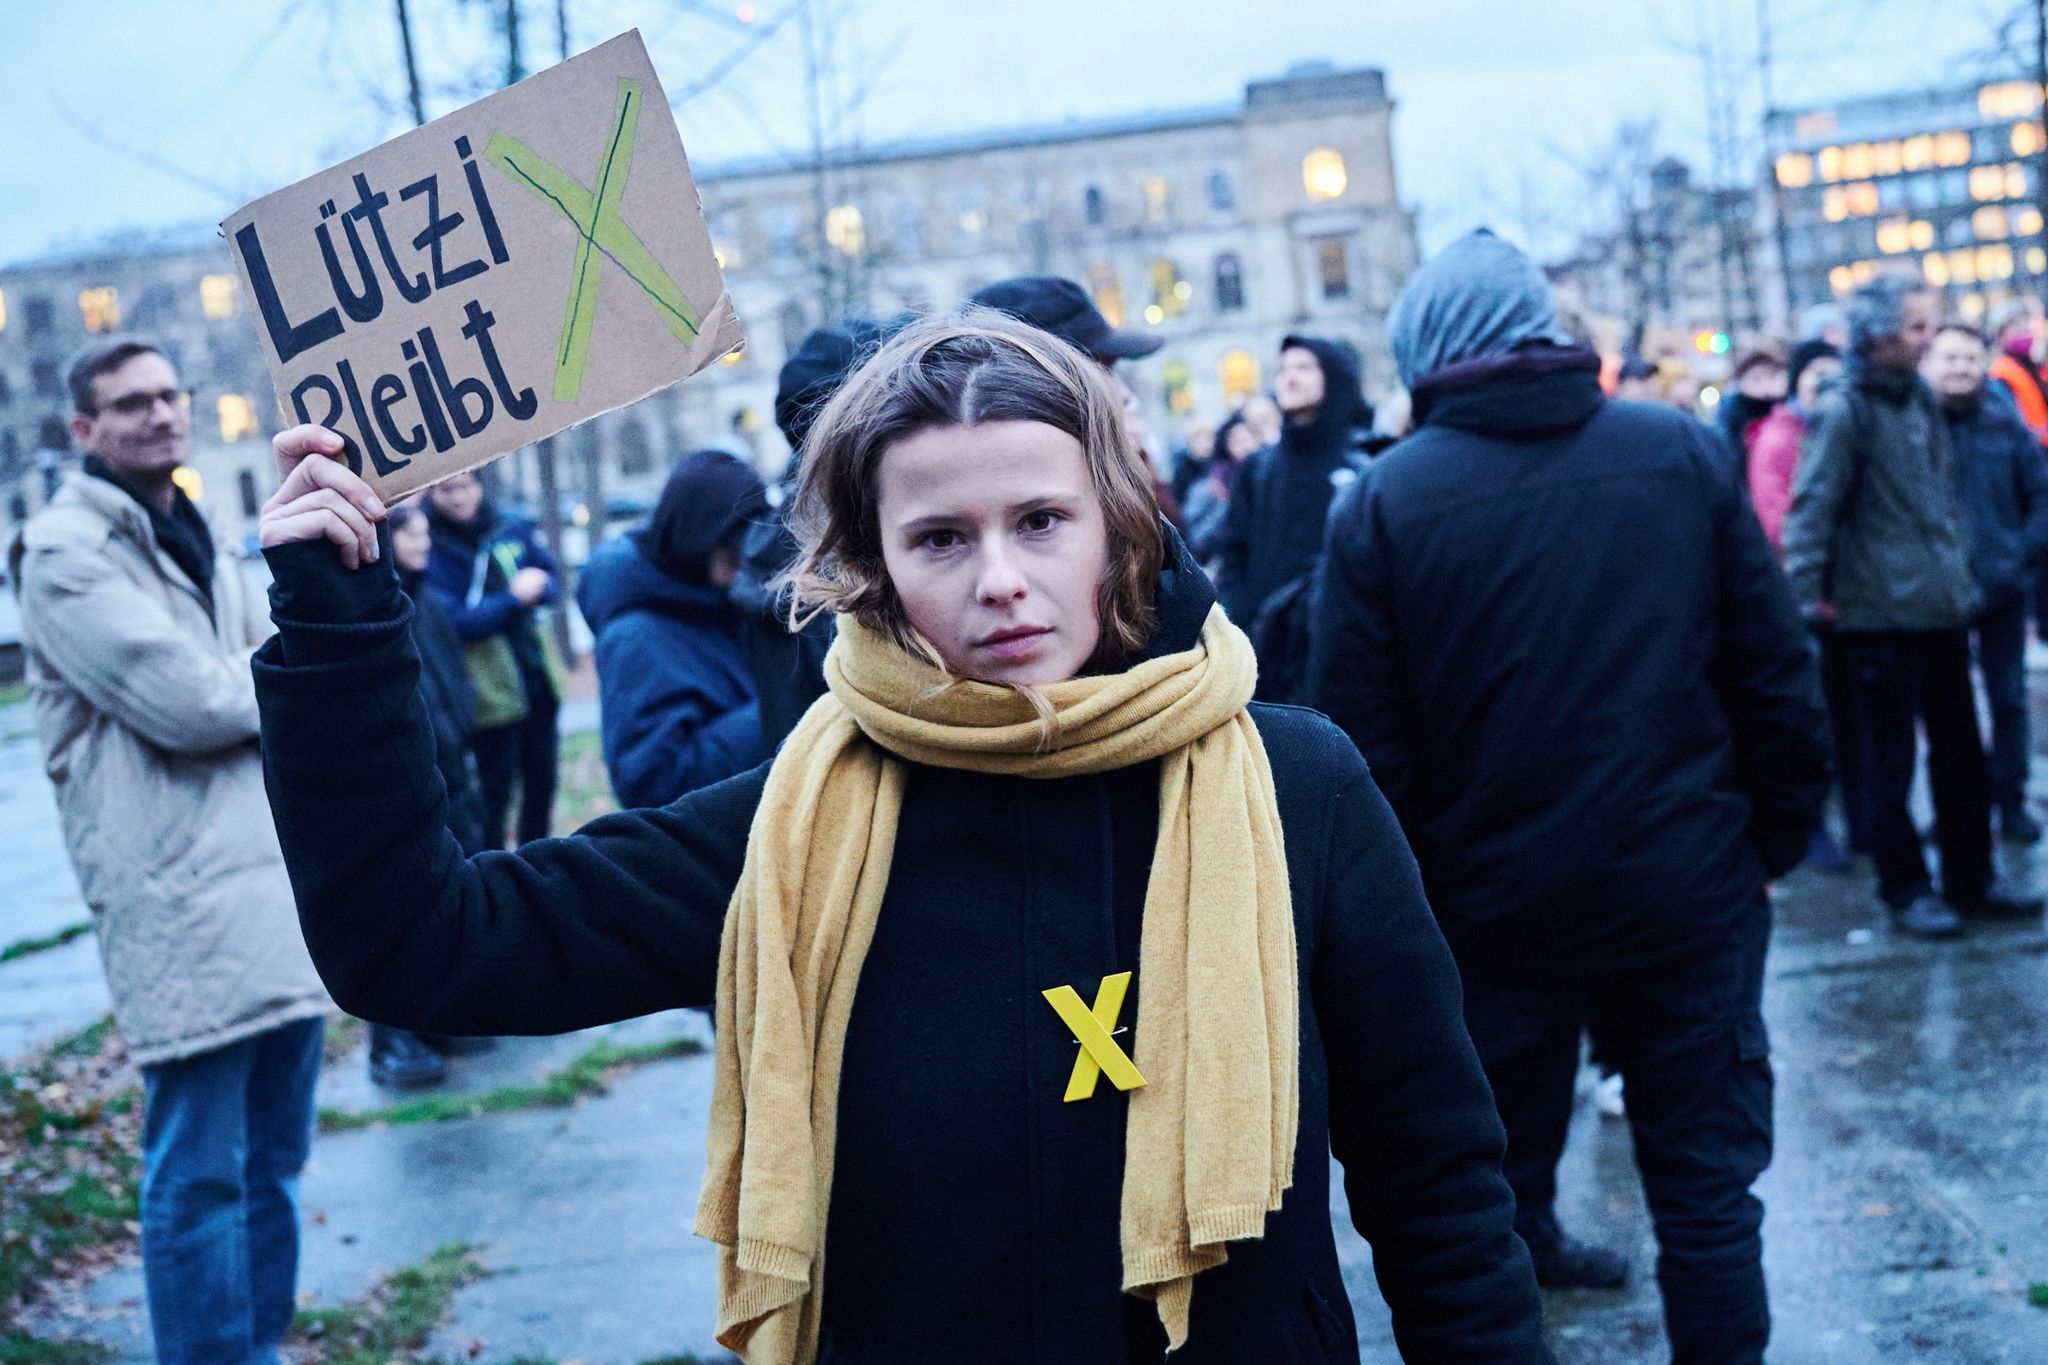 "Lützerath bleibt" steht auf einem Plakat, das Luisa Neubauer, Klimaaktivistin hält.